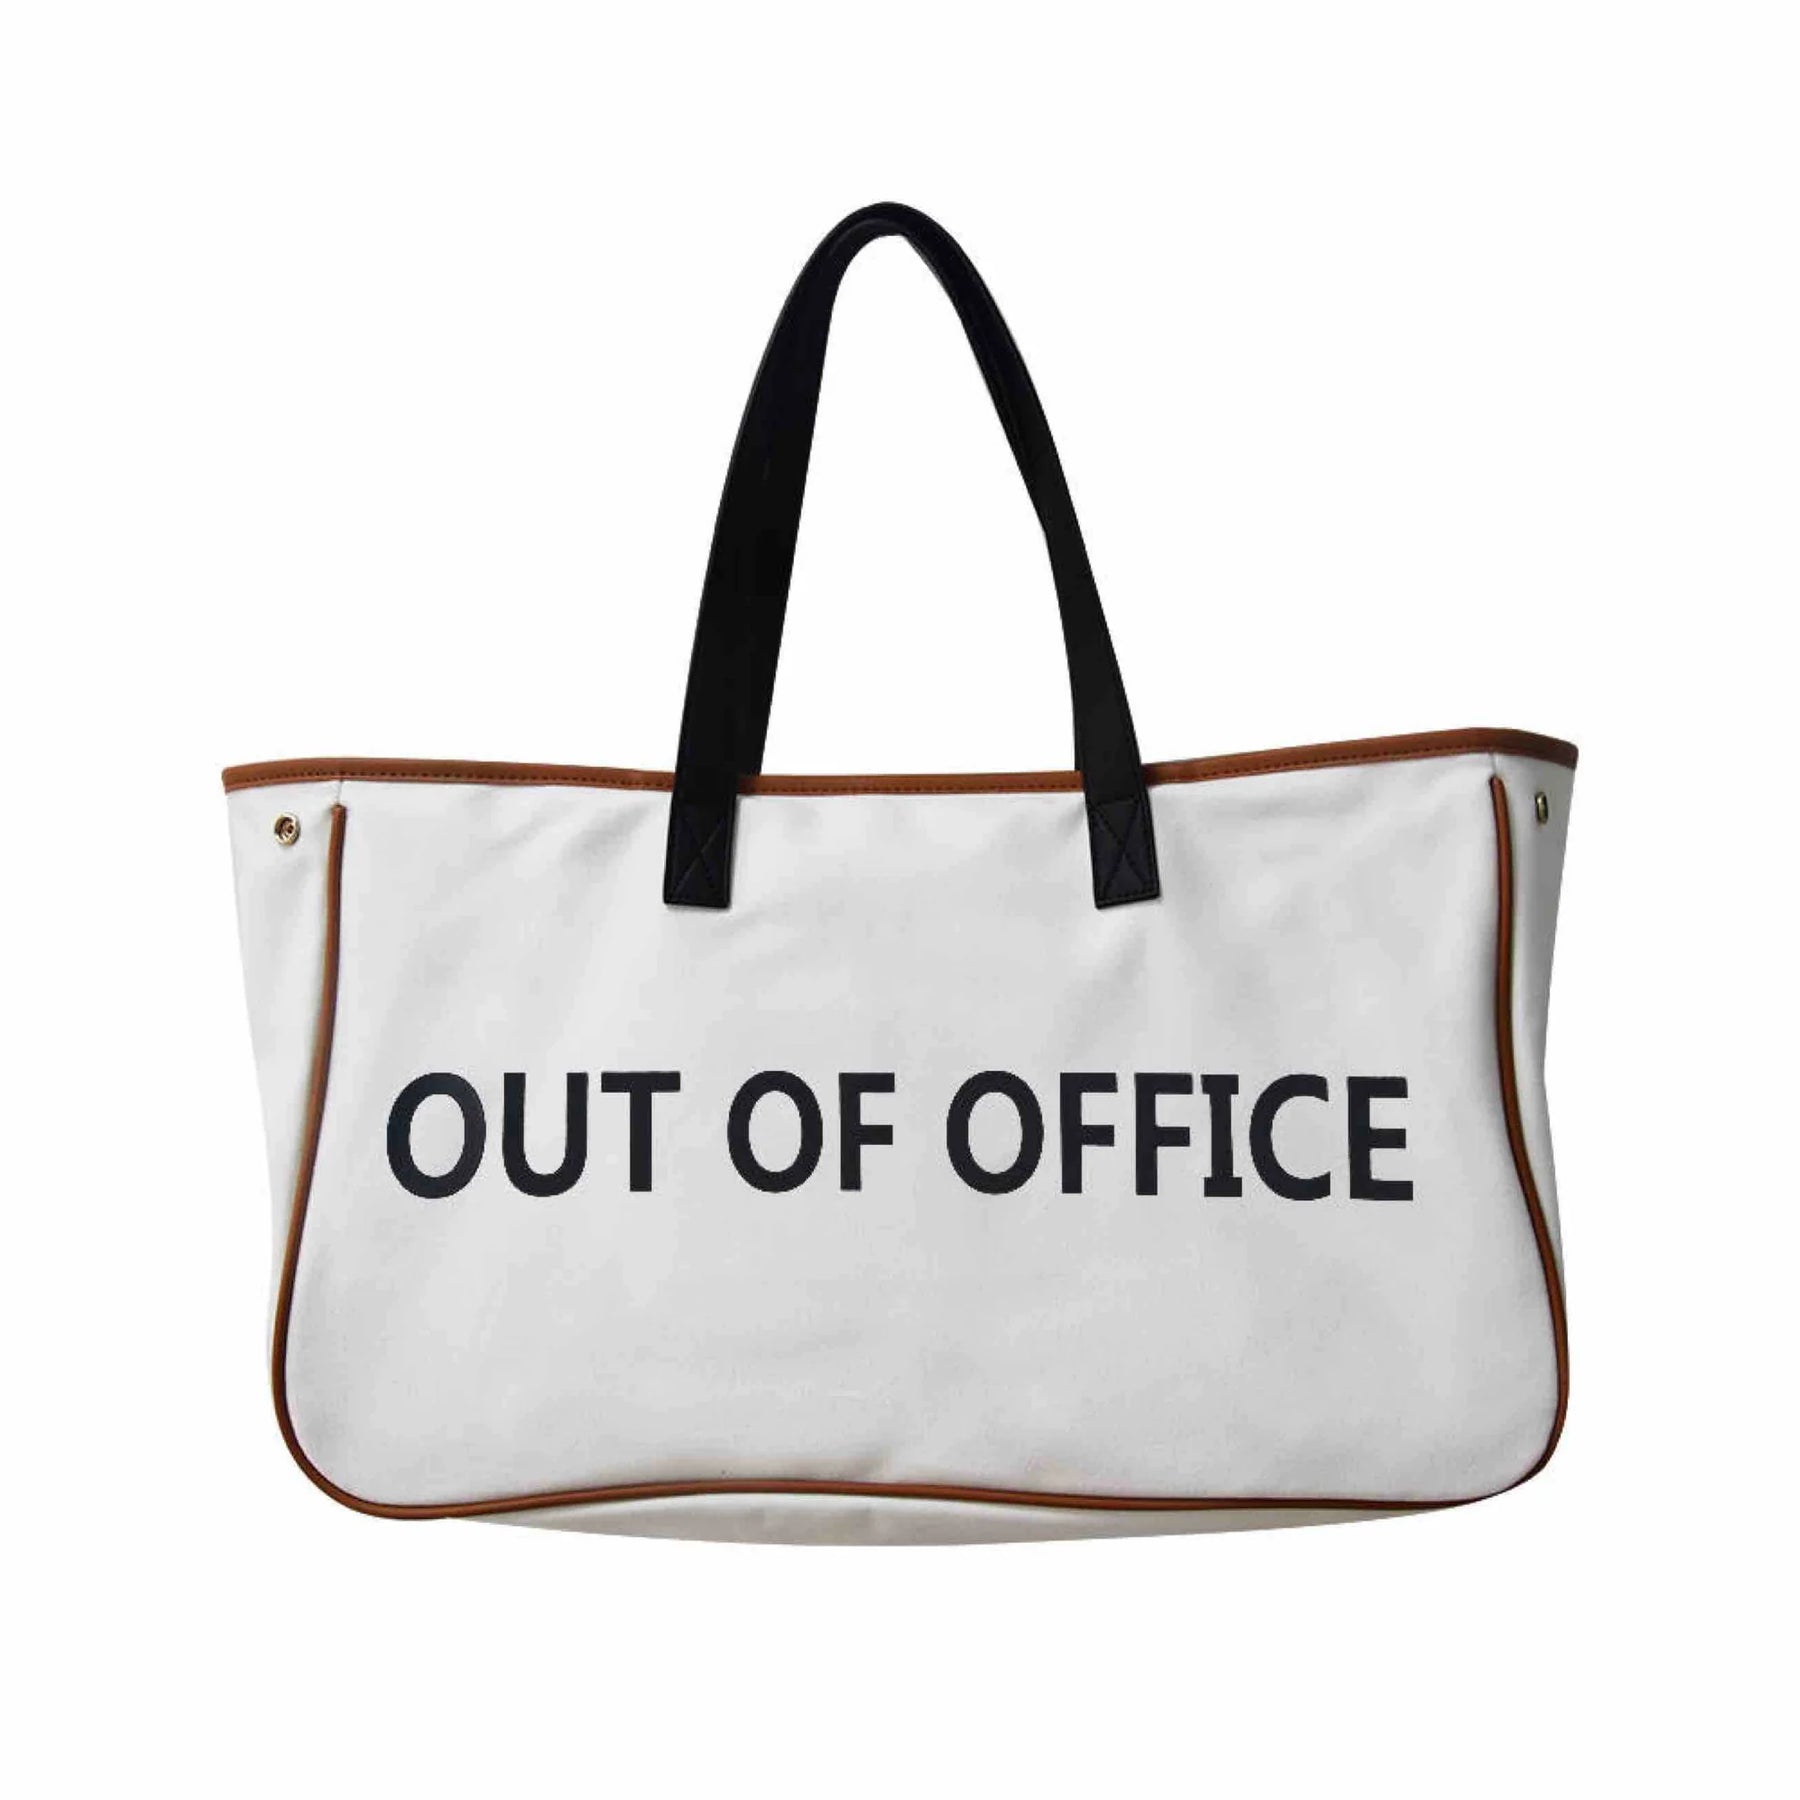 Weekend Getaway Tote Bag - Out of Office